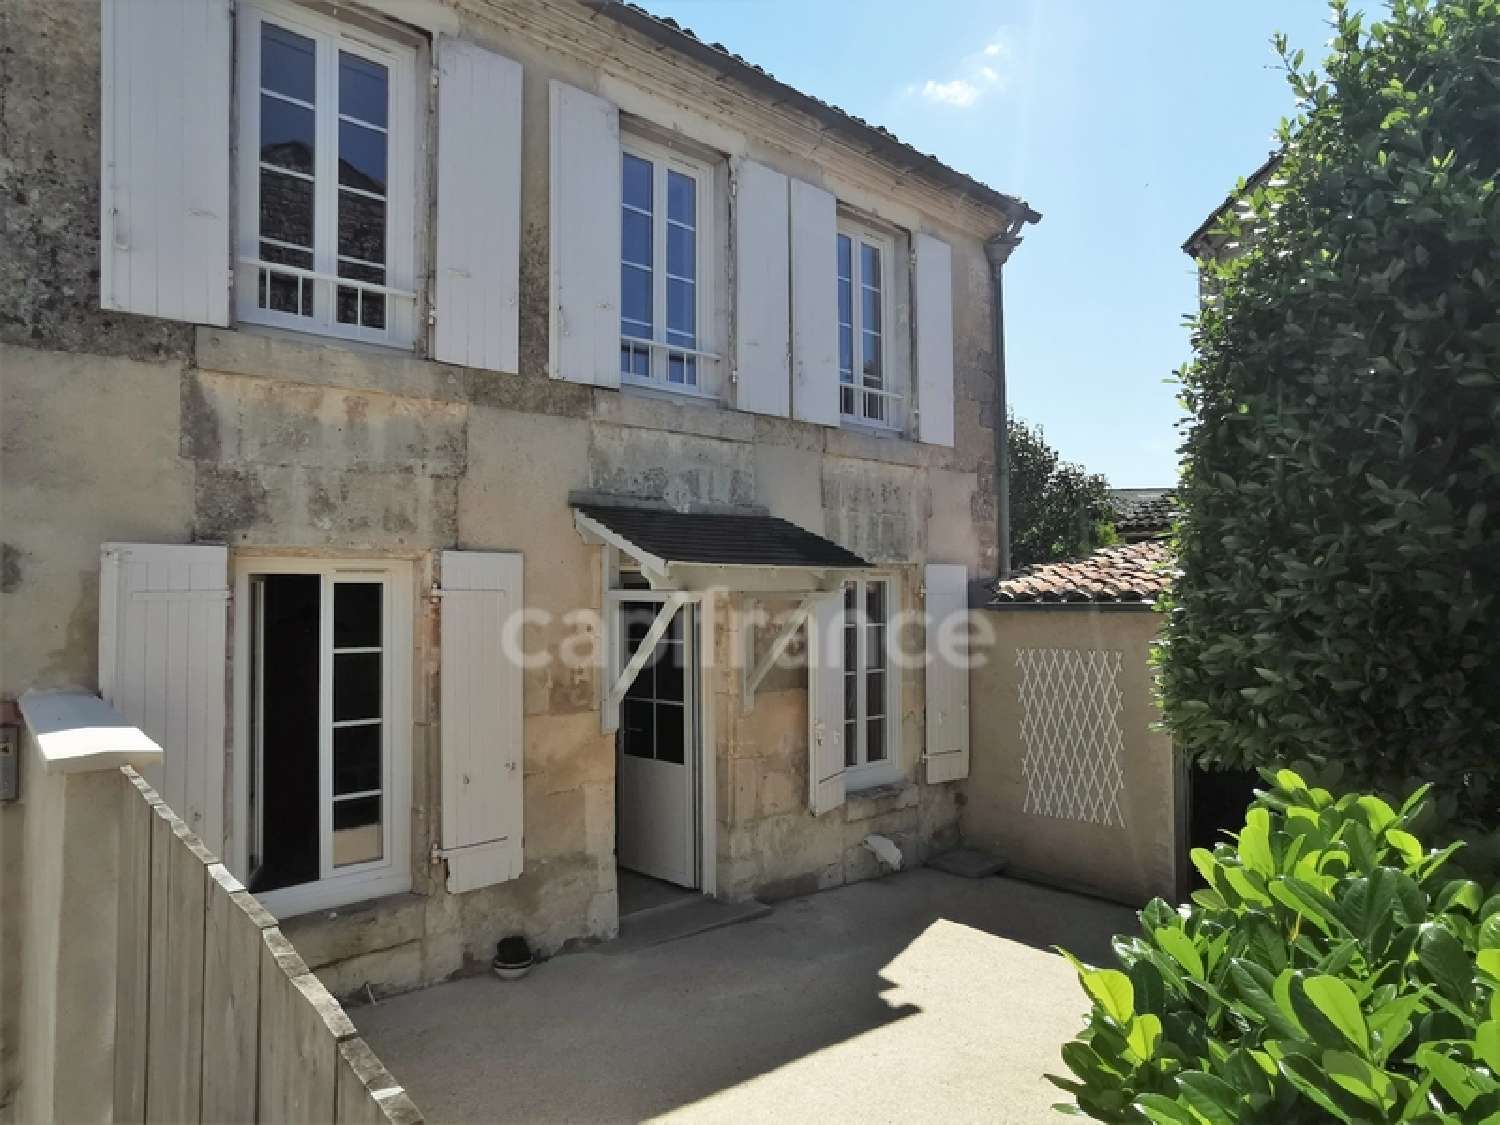  à vendre maison de ville Jarnac Charente 1